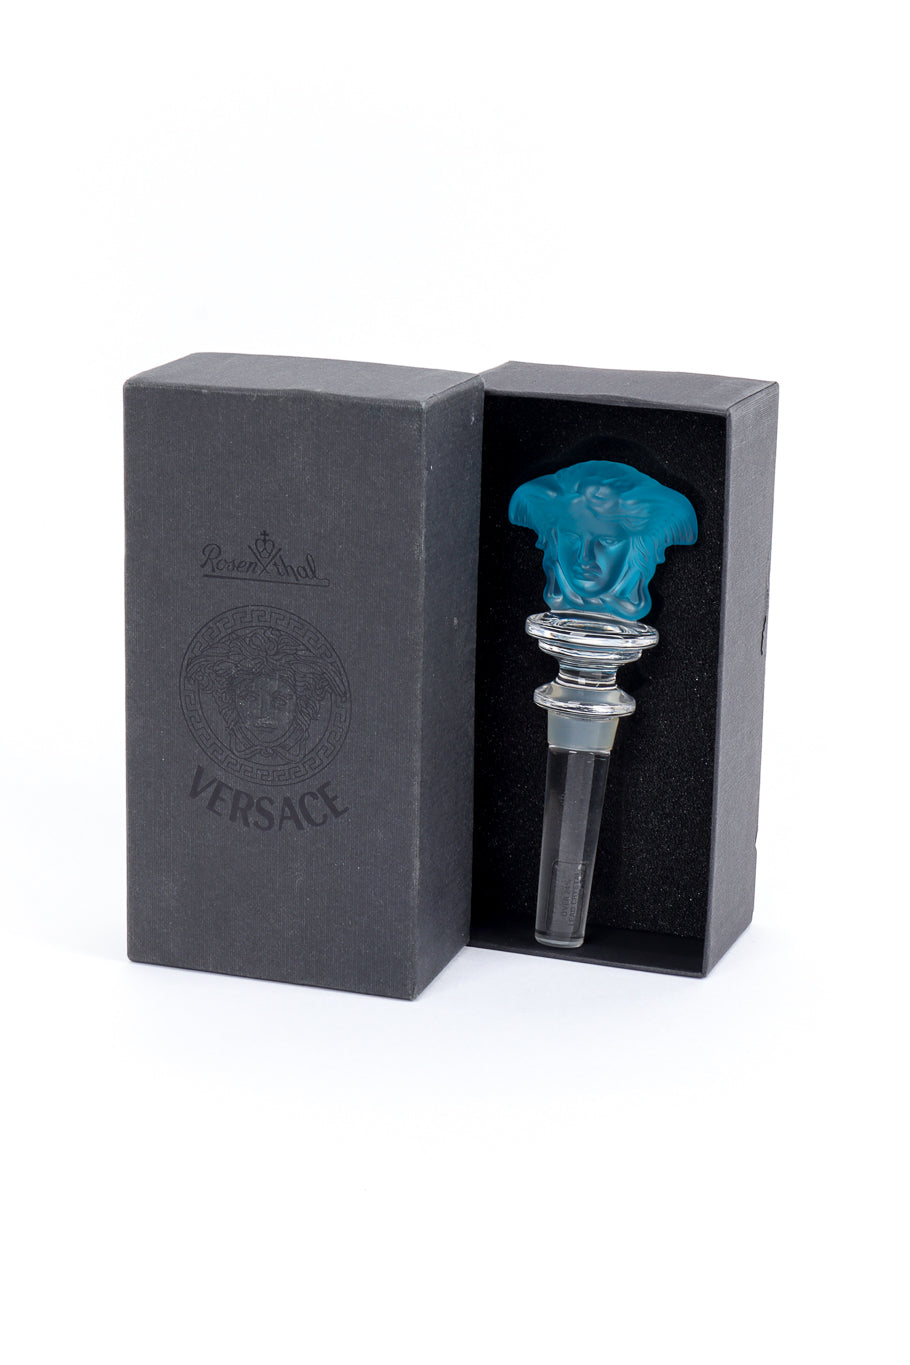 Vintage Versace Rosenthal Medusa Crystal Bottle Stopper in box @recess la